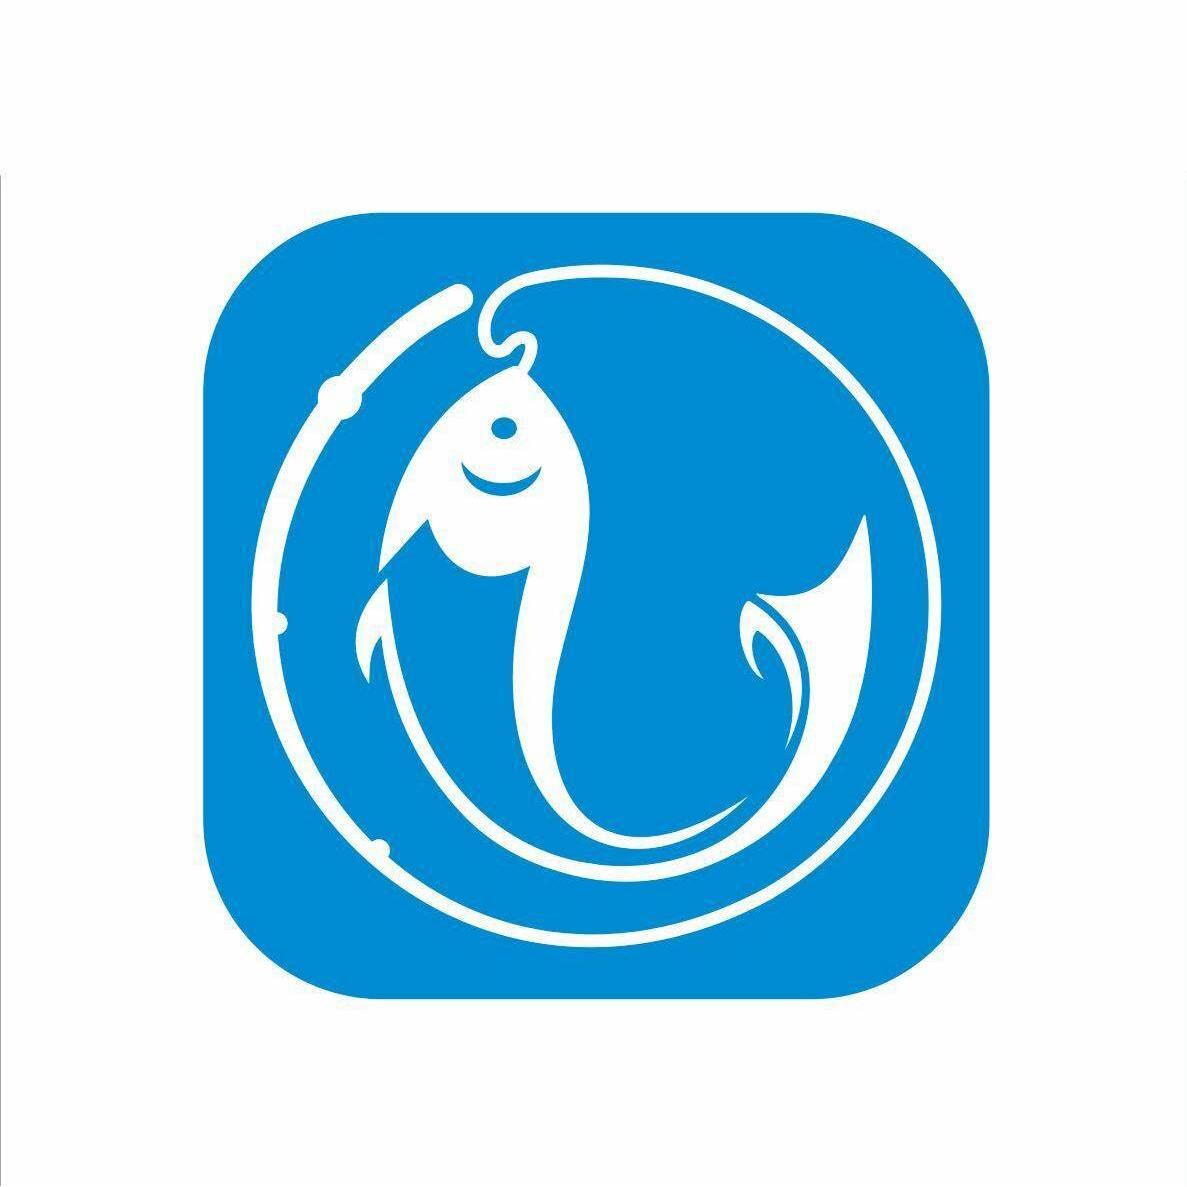 钓鱼台logo图片